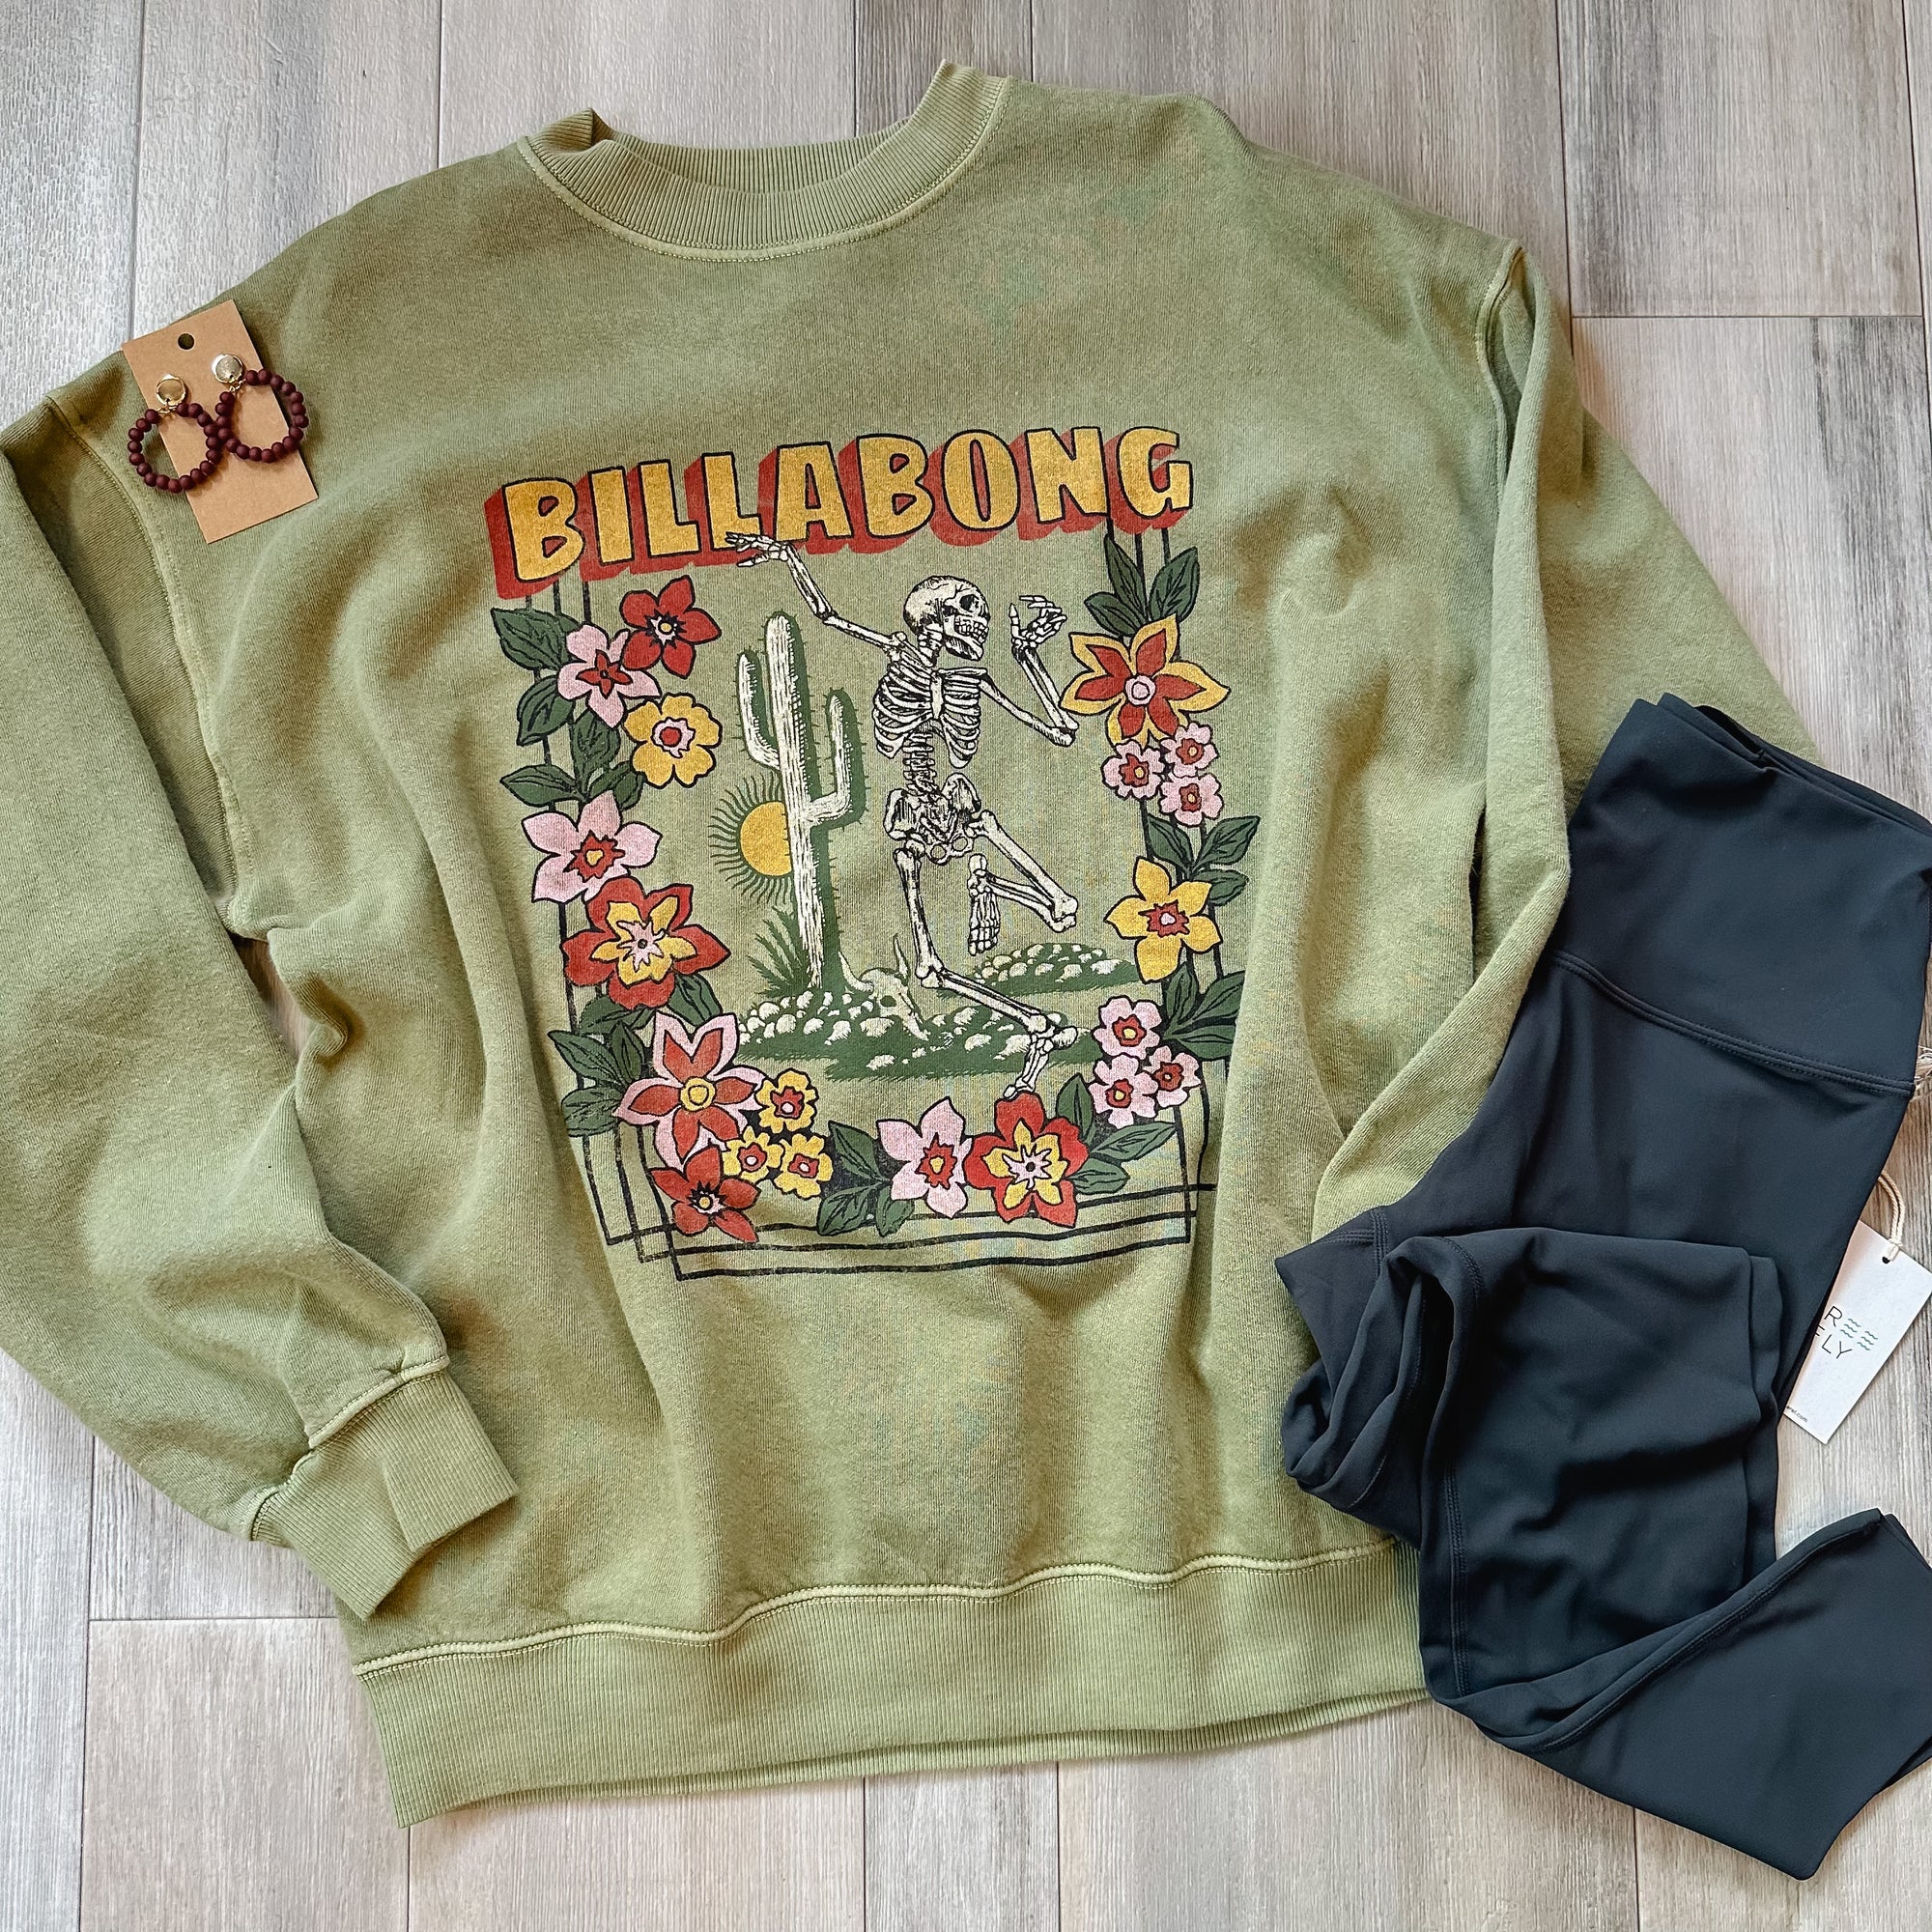 Billabong Ride in Sweatshirt | Avocado